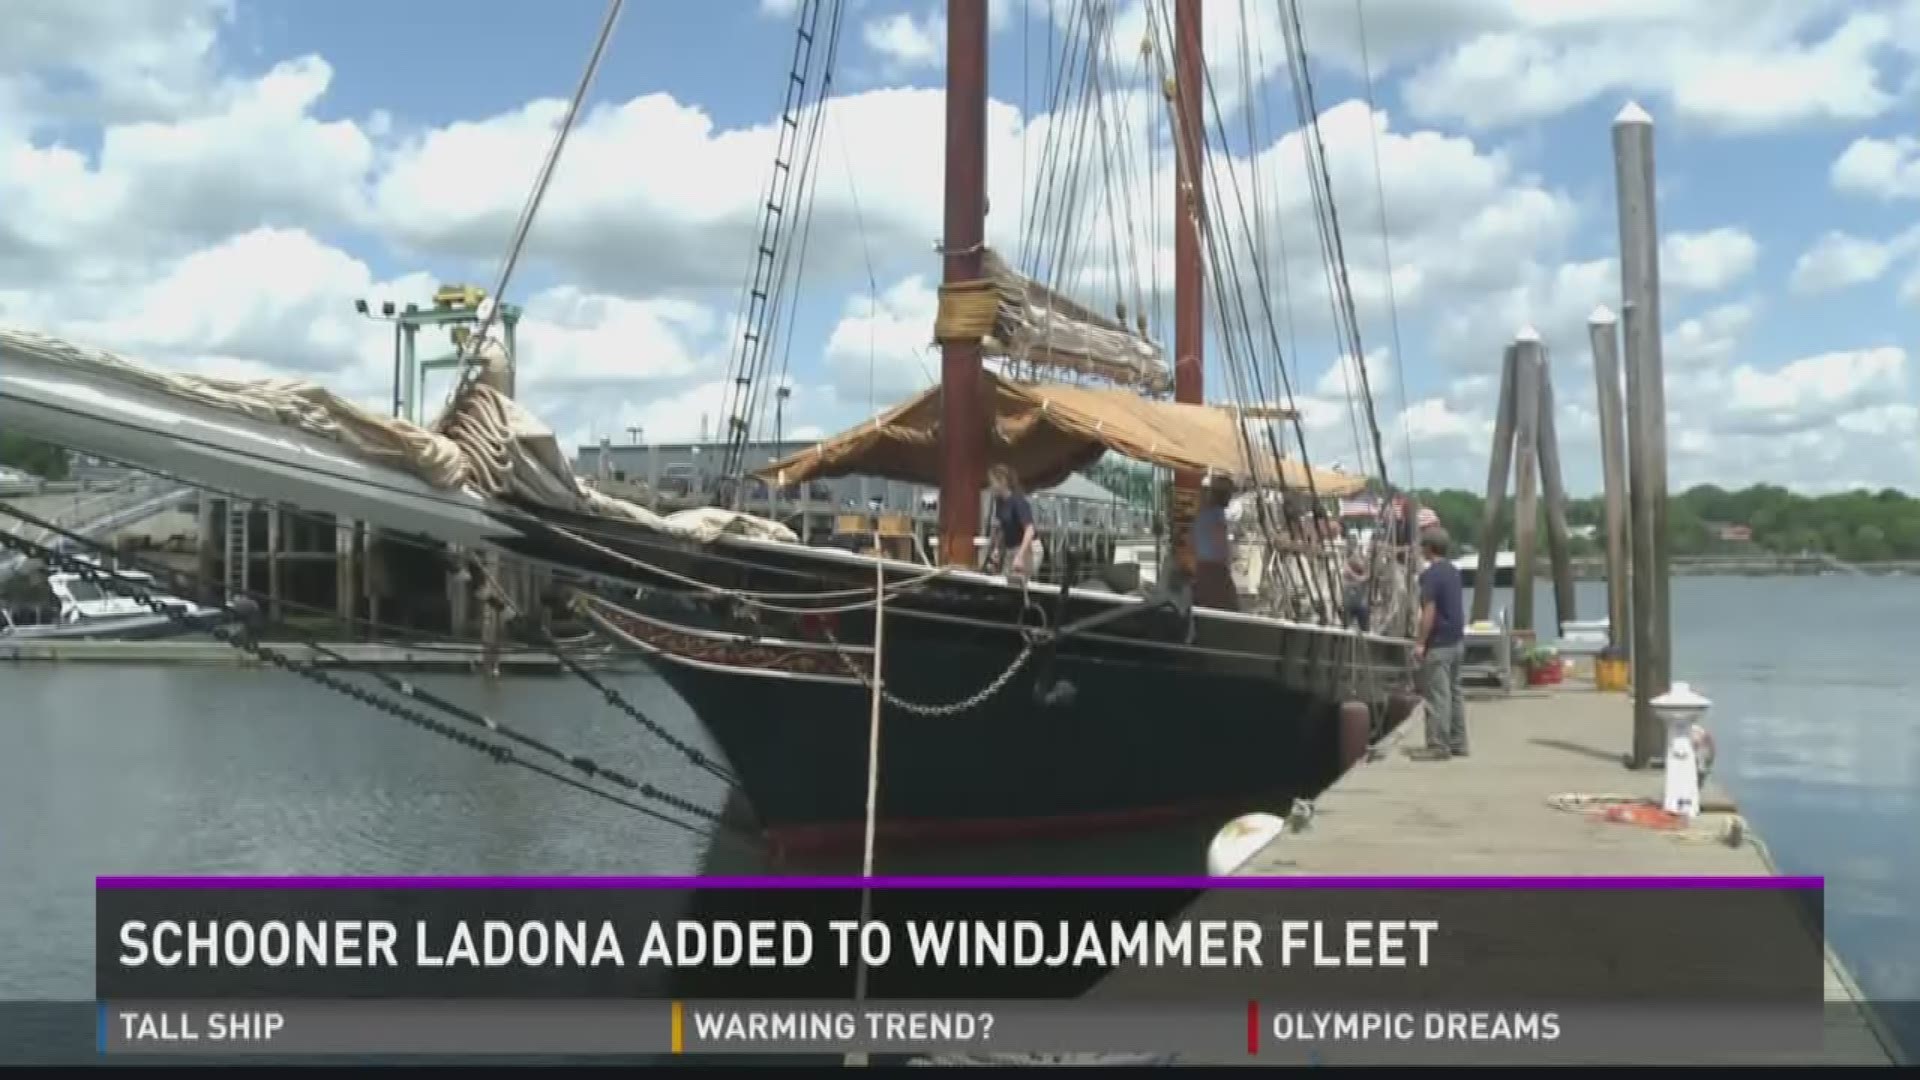 Schooner Ladona added to windjammer fleet